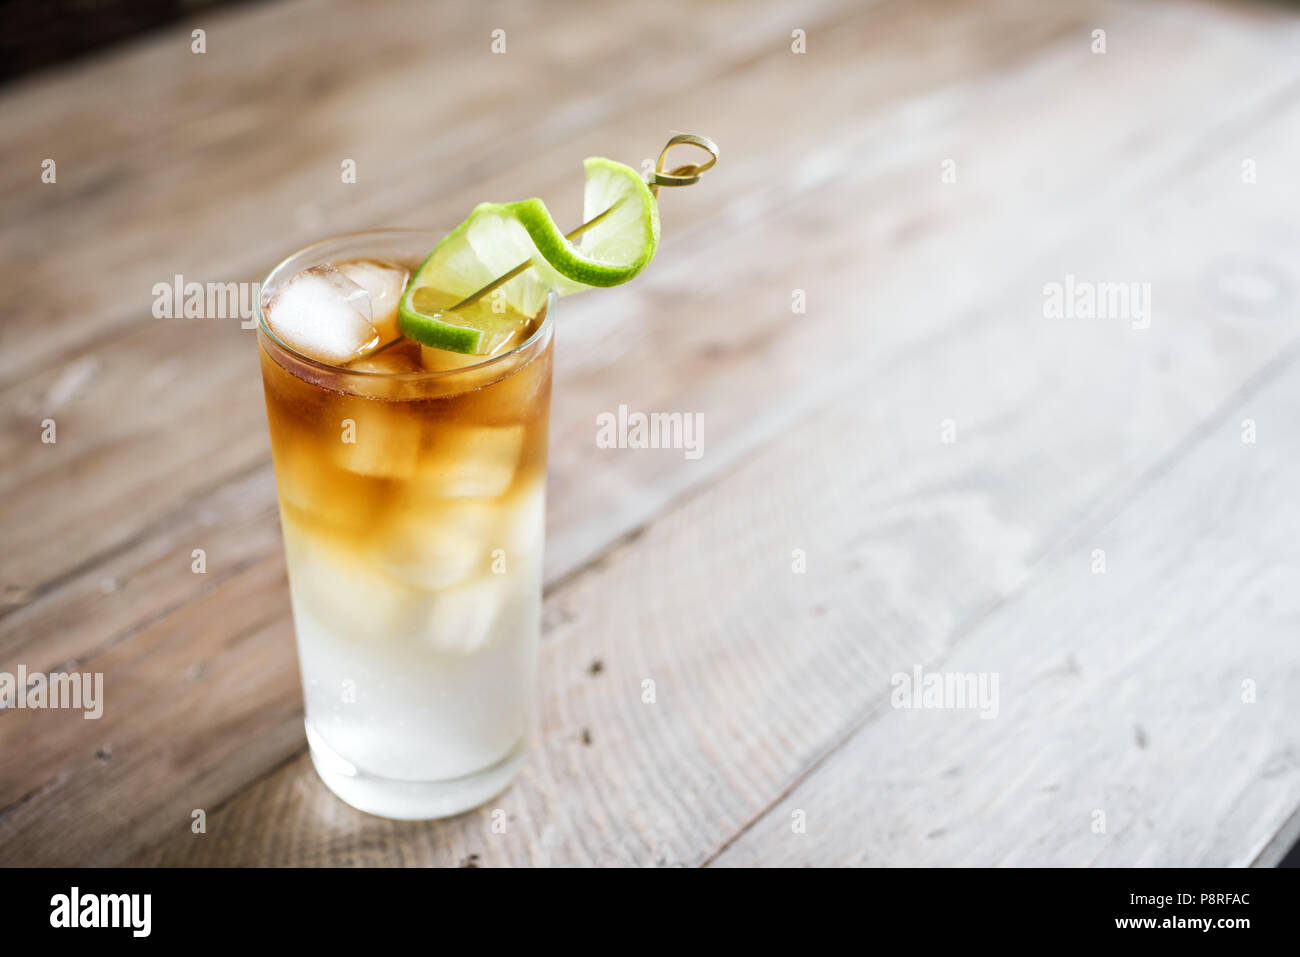 Dunkle und stürmische Rum Cocktail mit Ingwer Bier und Limette garnieren. Glas der Dunkle und stürmische Cocktail Drink auf Holztisch, kopieren. Stockfoto